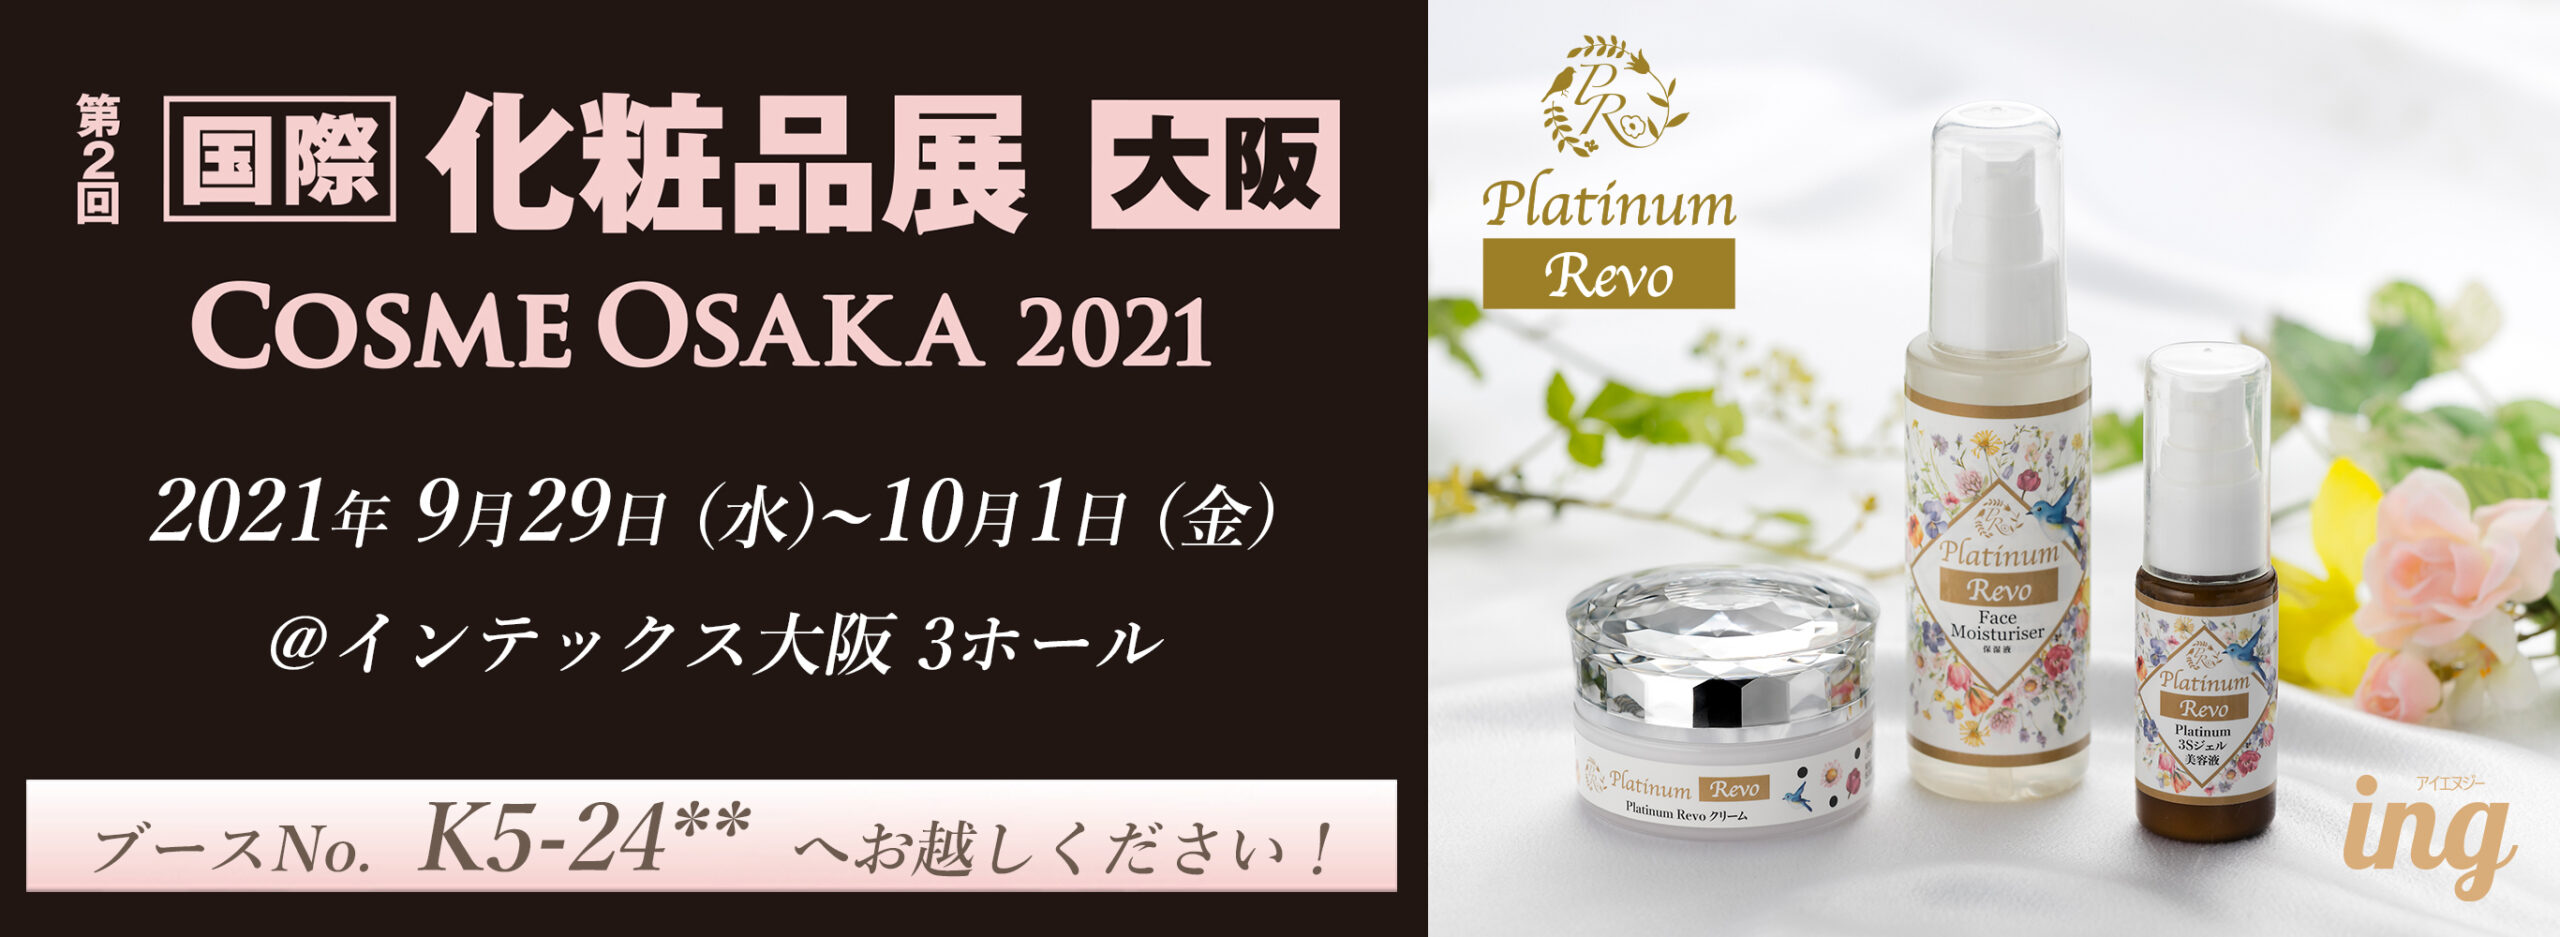 Cosme Osaka 2021